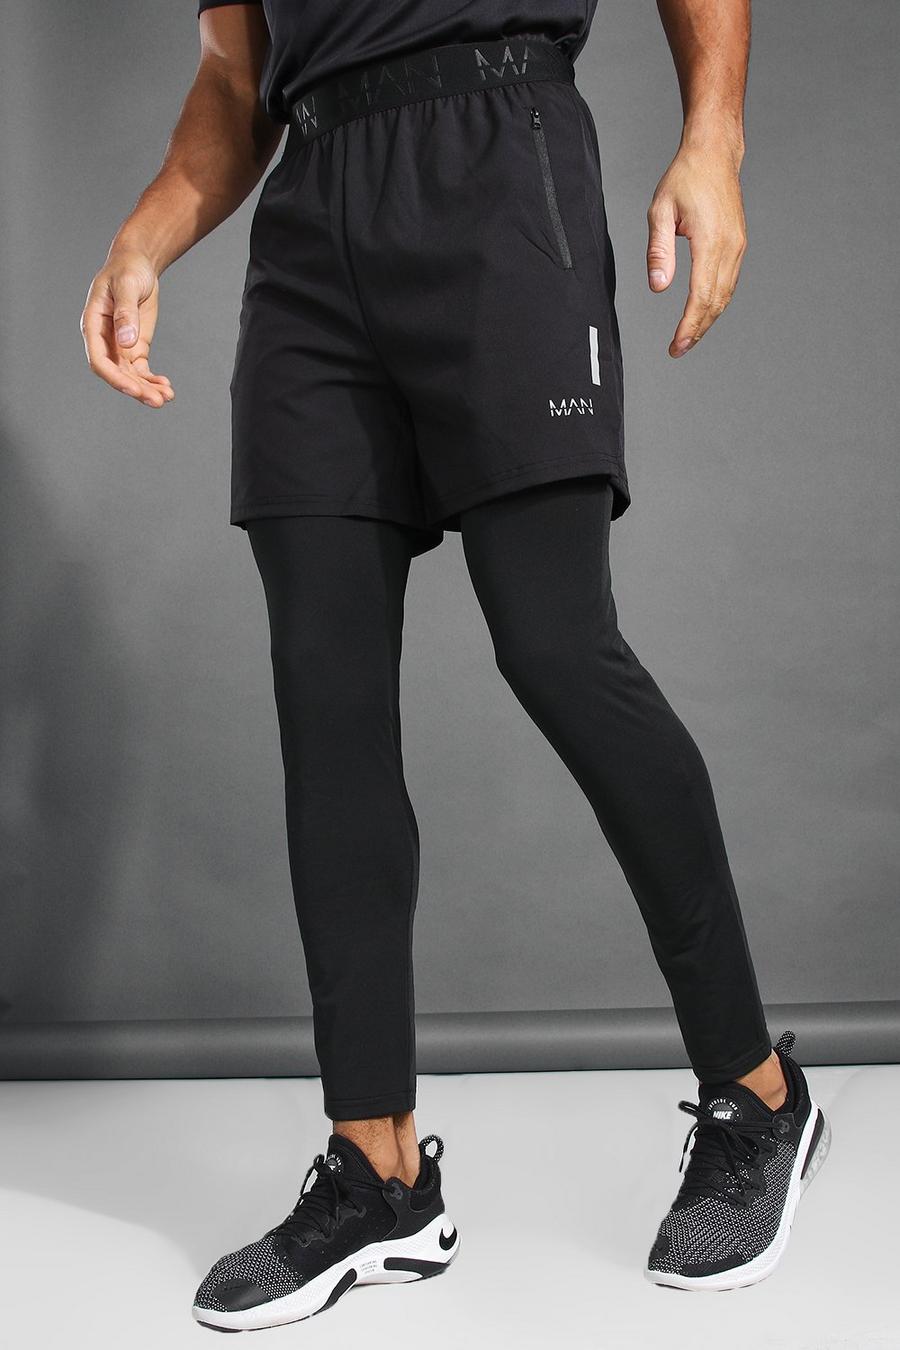 Pantalones cortos ajustados 2 en 1 con bajo con abertura MAN Active, Negro image number 1